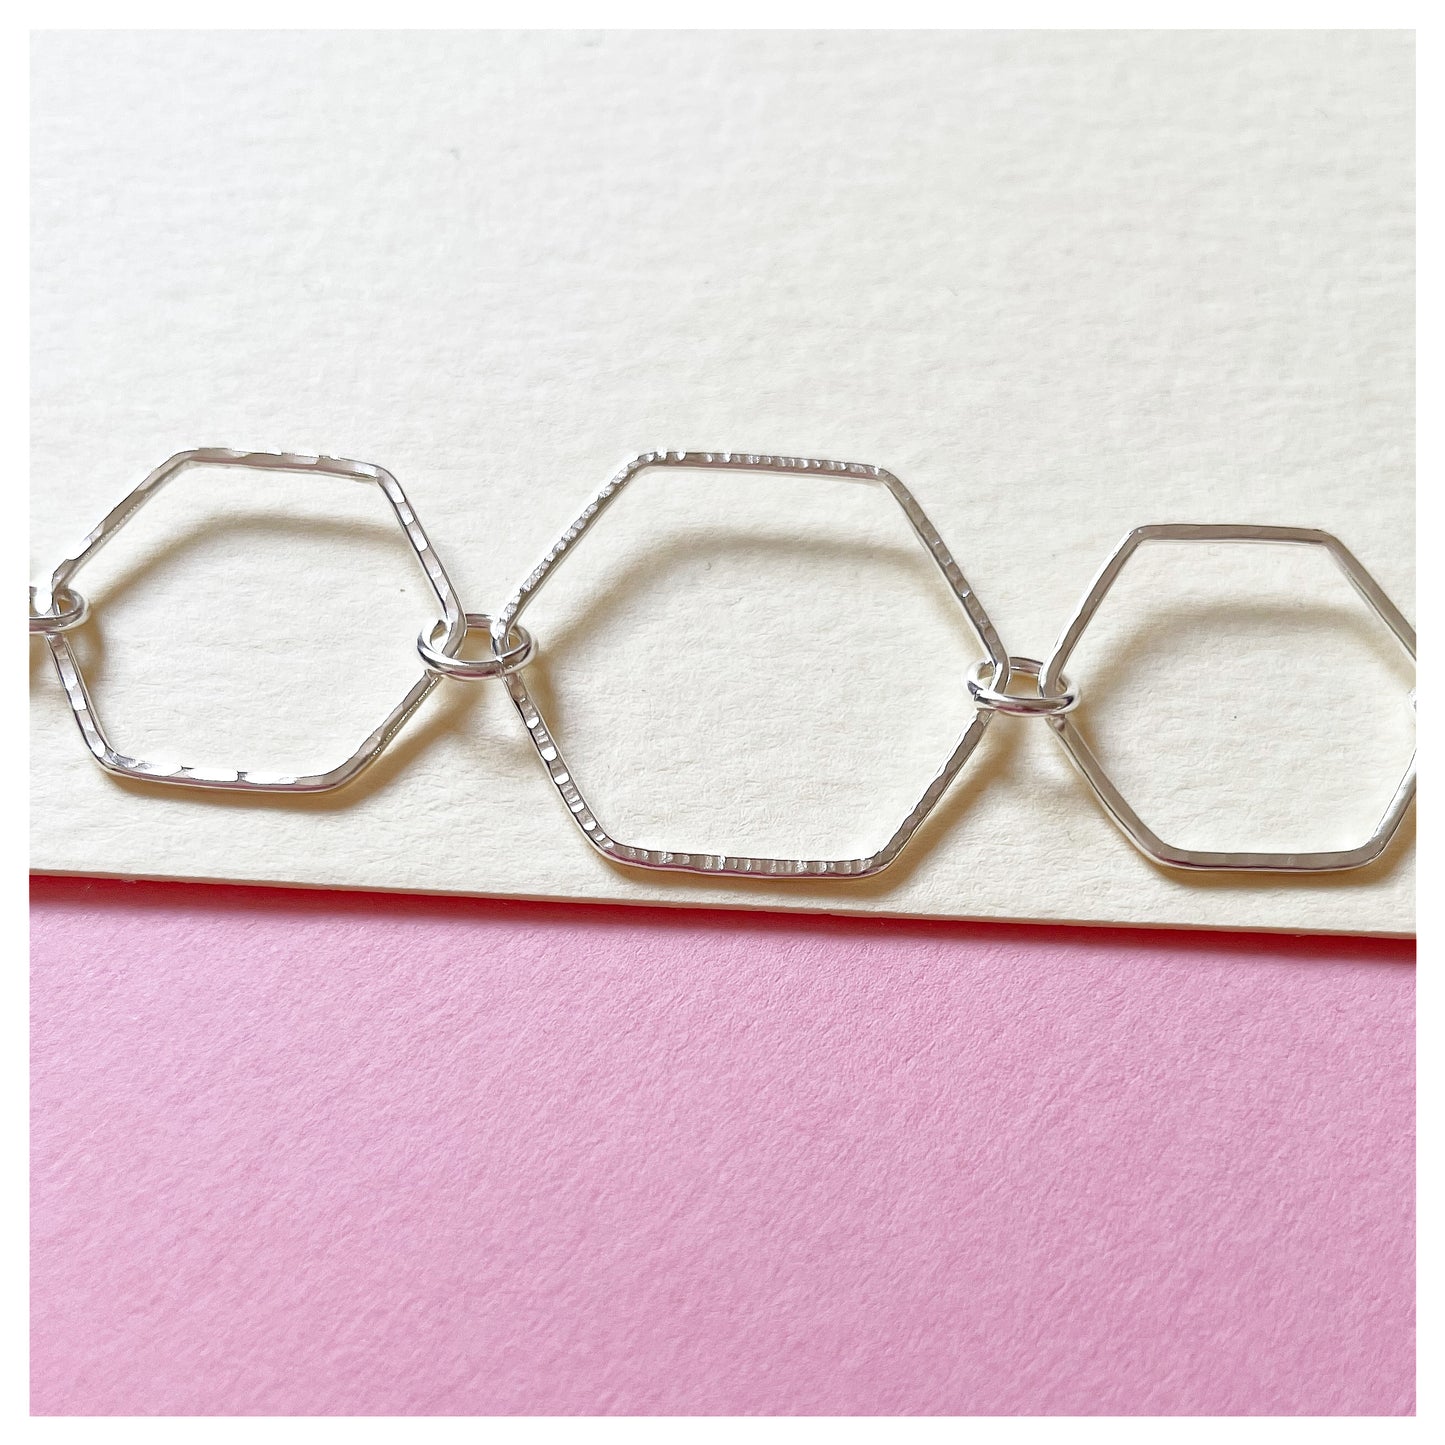 Sterling Silver Handmade Hexagonal Link Bracelet